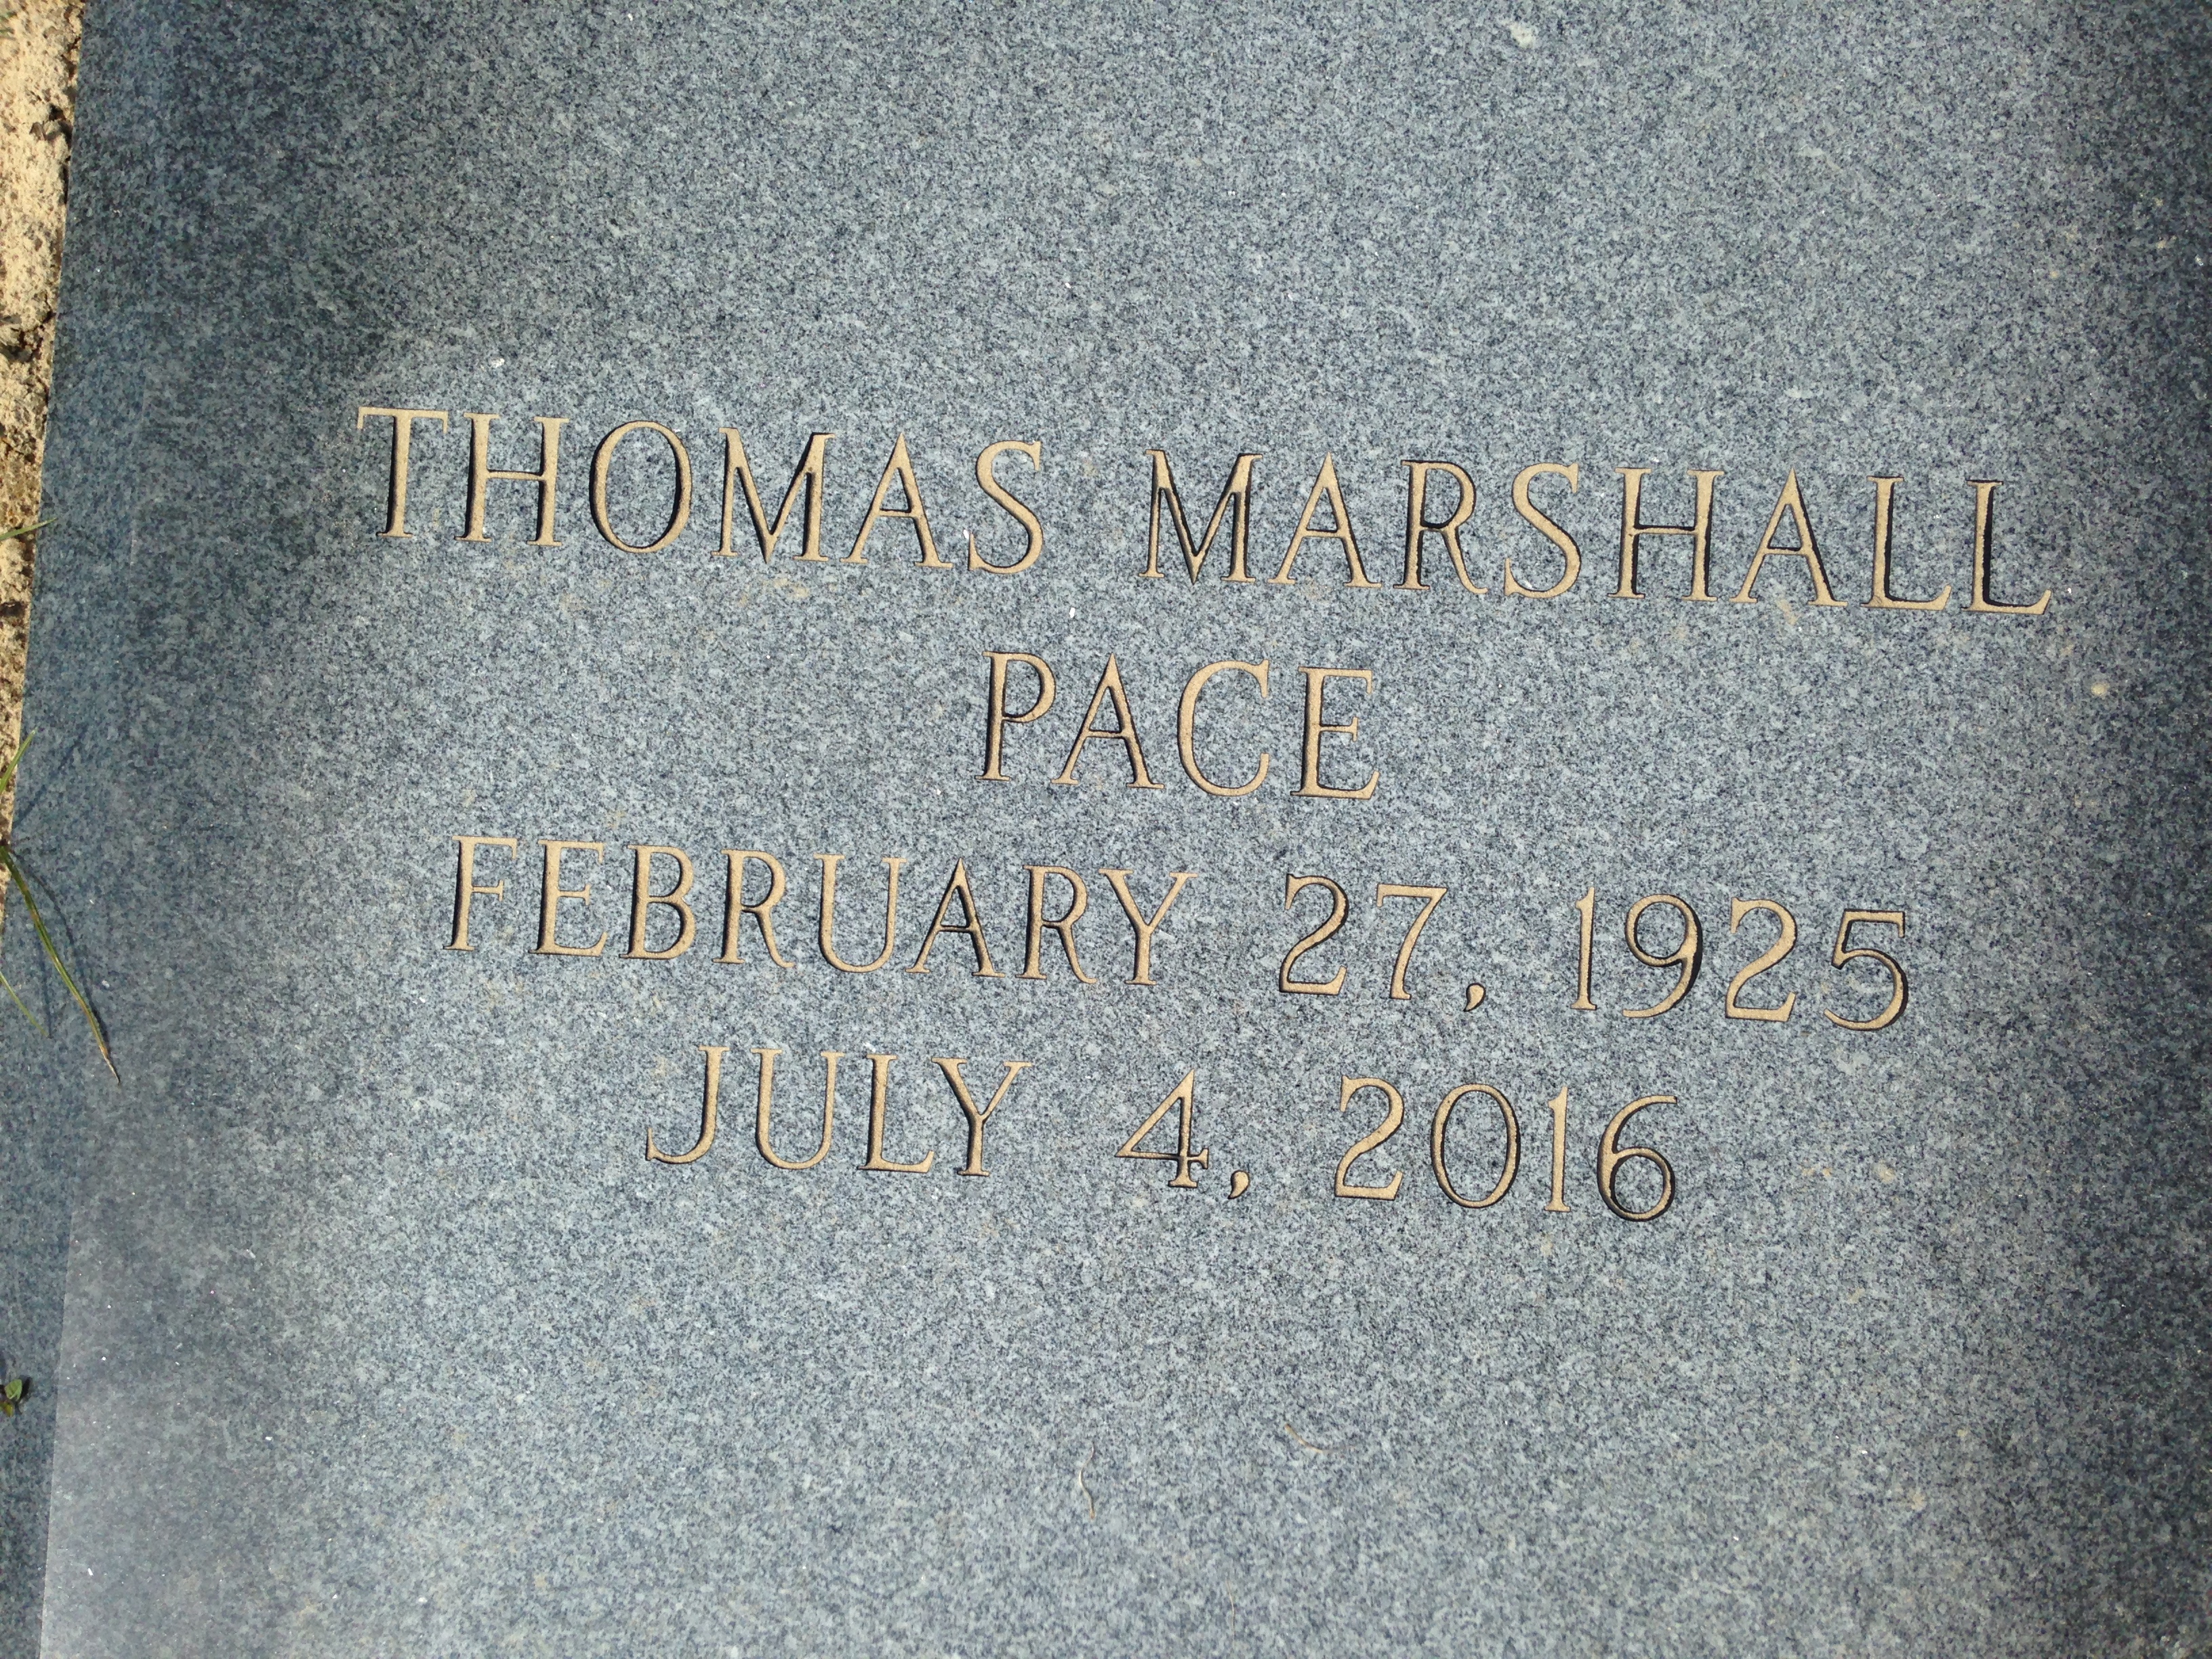 Thomas Marshall, Sr Pace